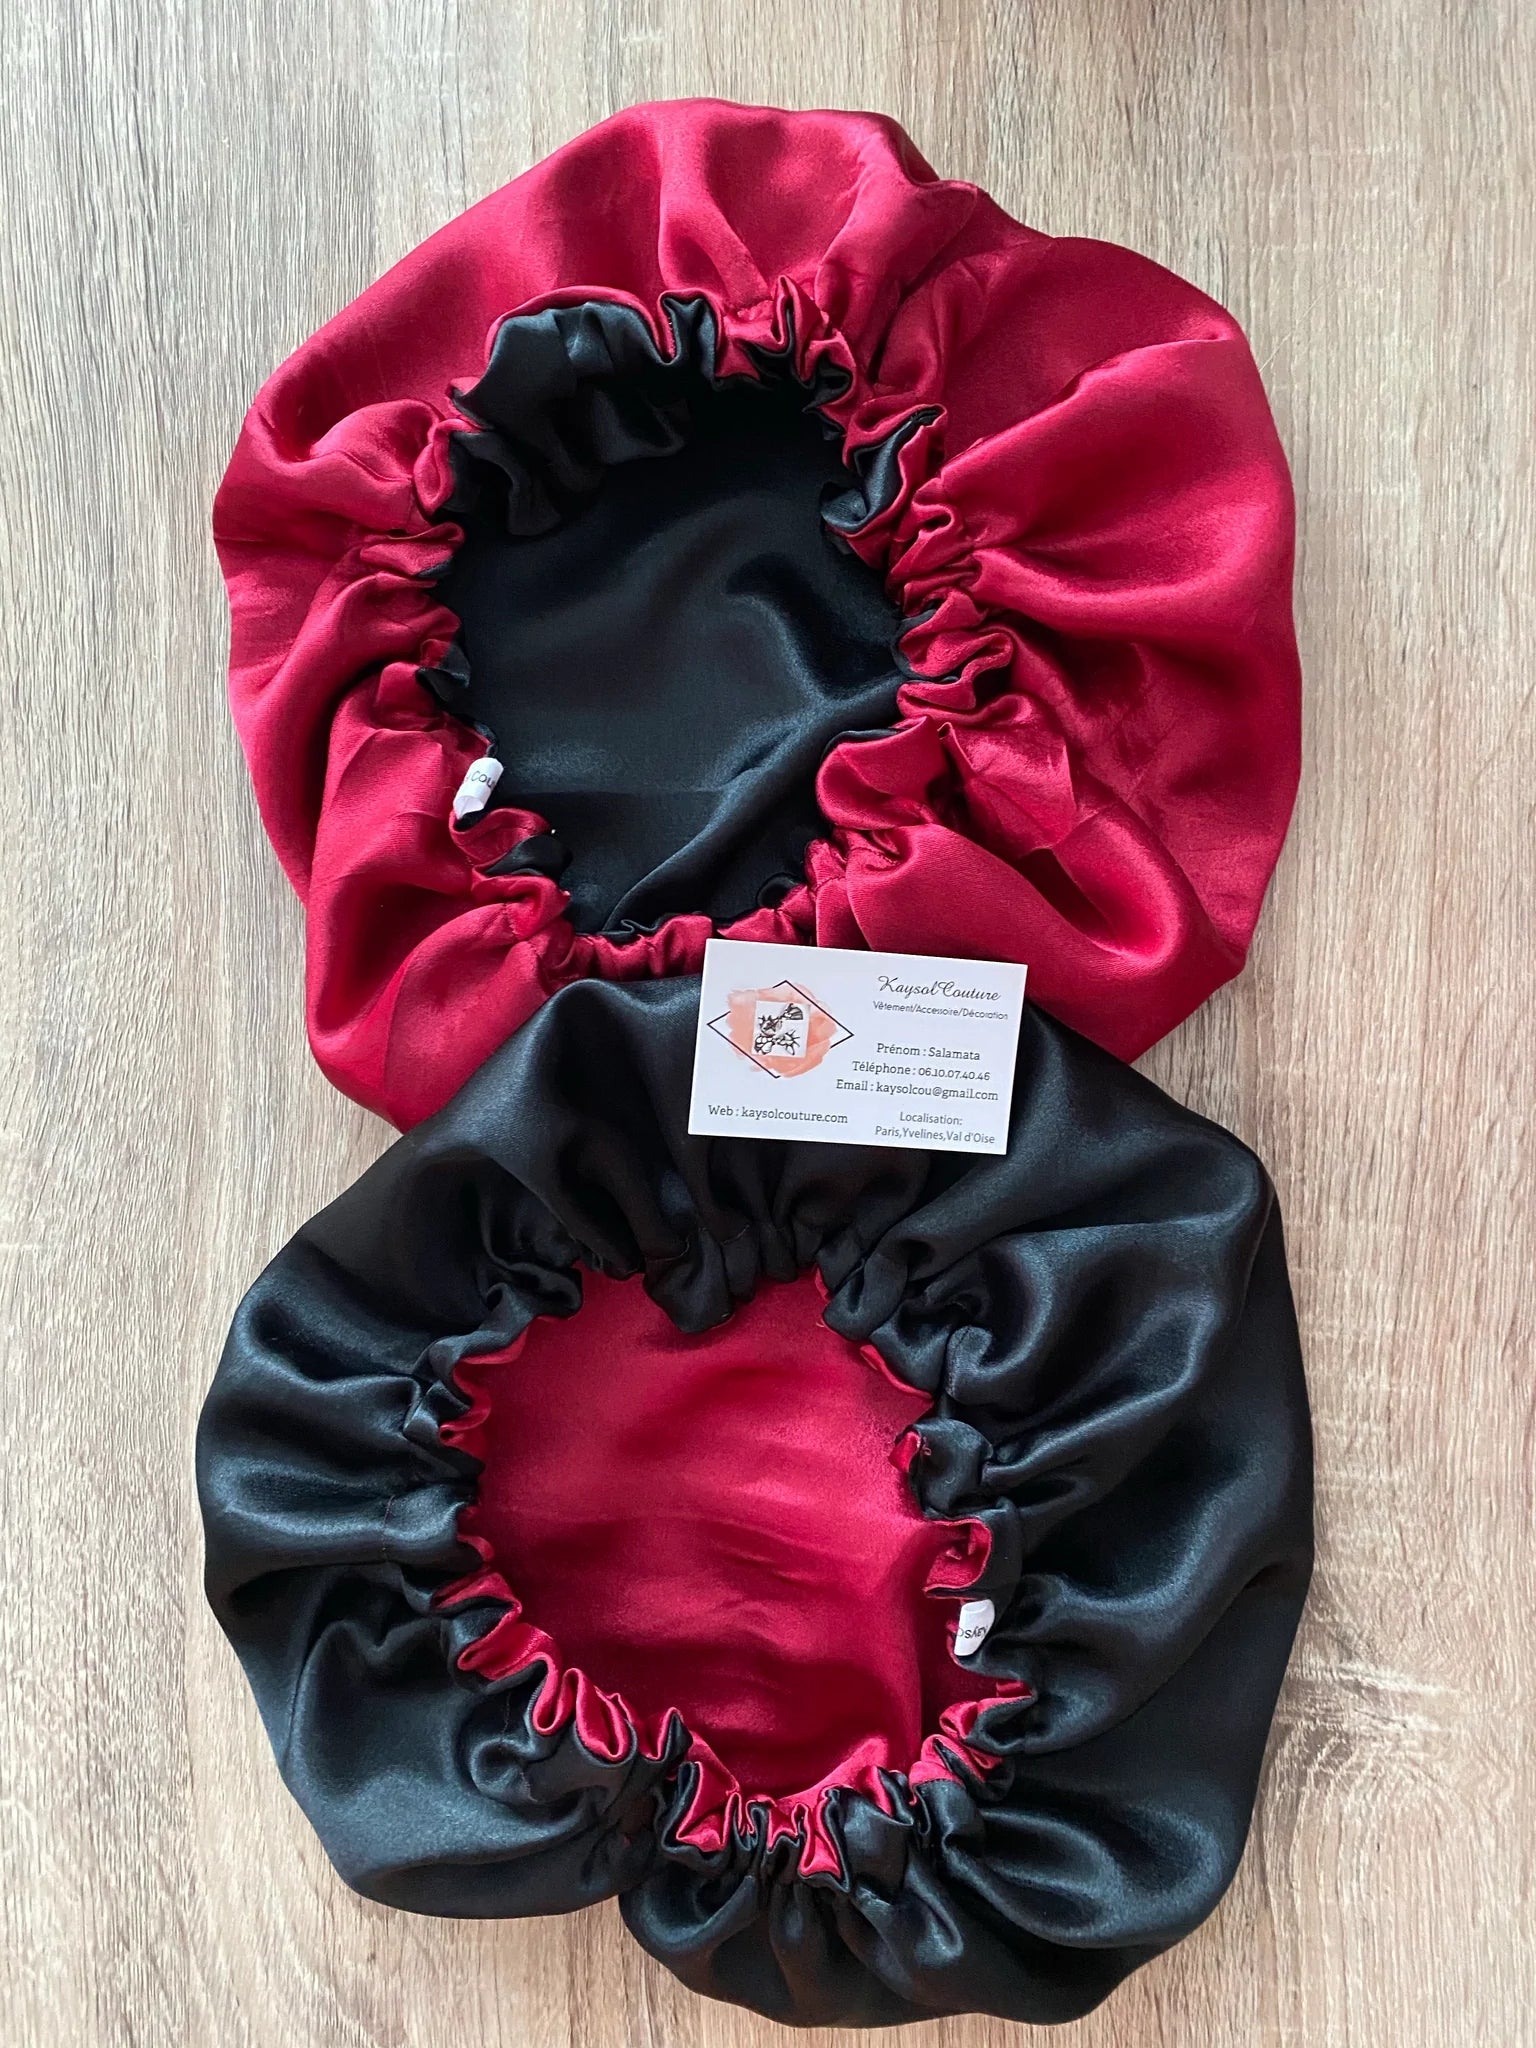 Acheter Bonnet en satin pour dormir -artisanale- – Kaysol Couture